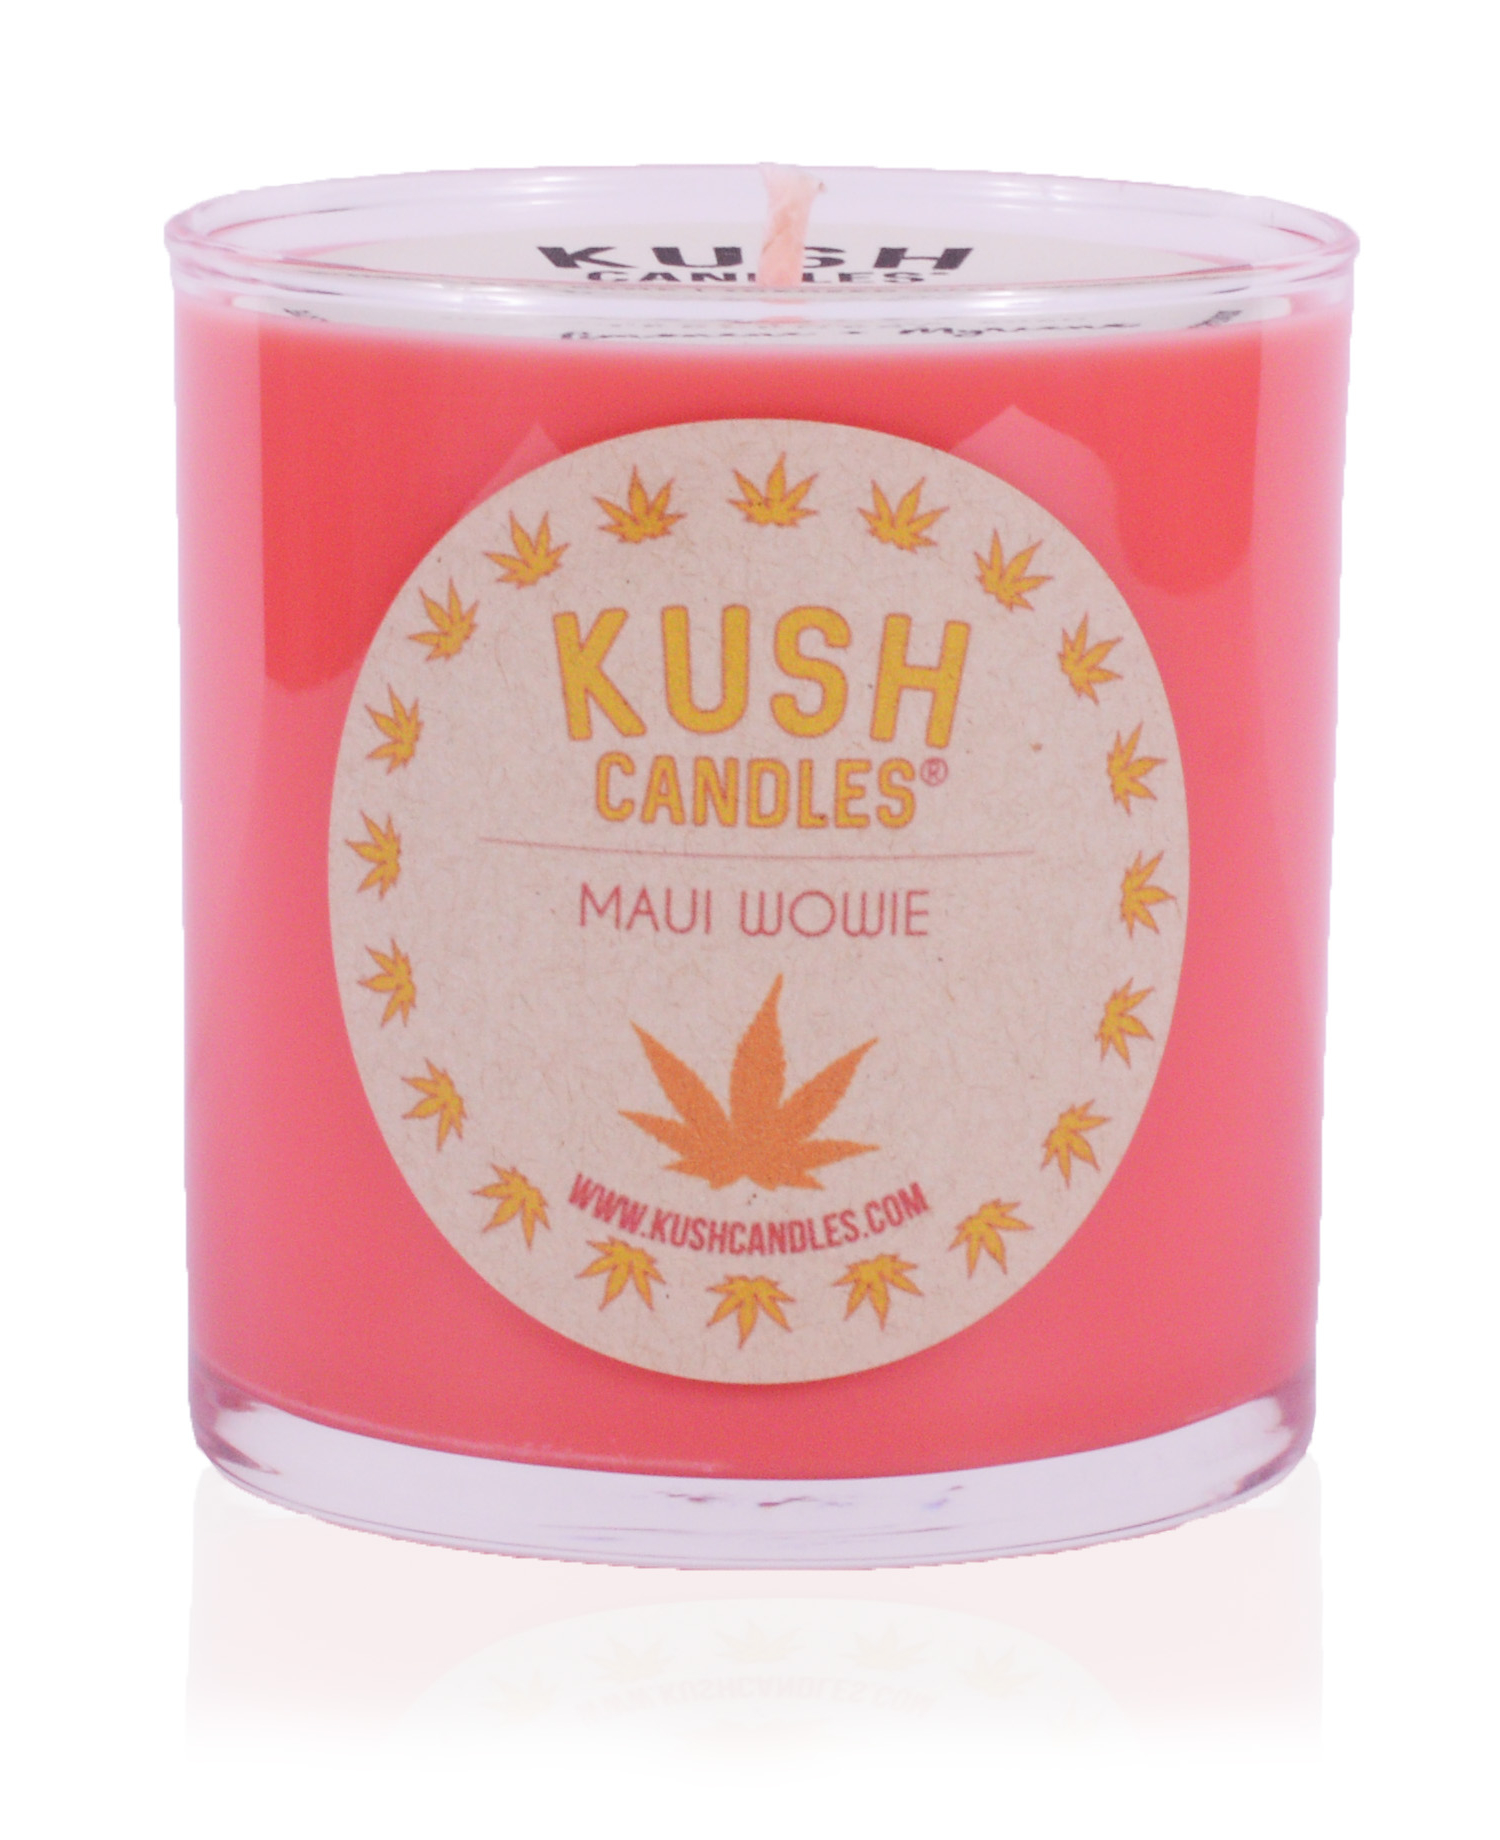 Maui Wowie – 10oz Kush Candles ® – Kush Candles